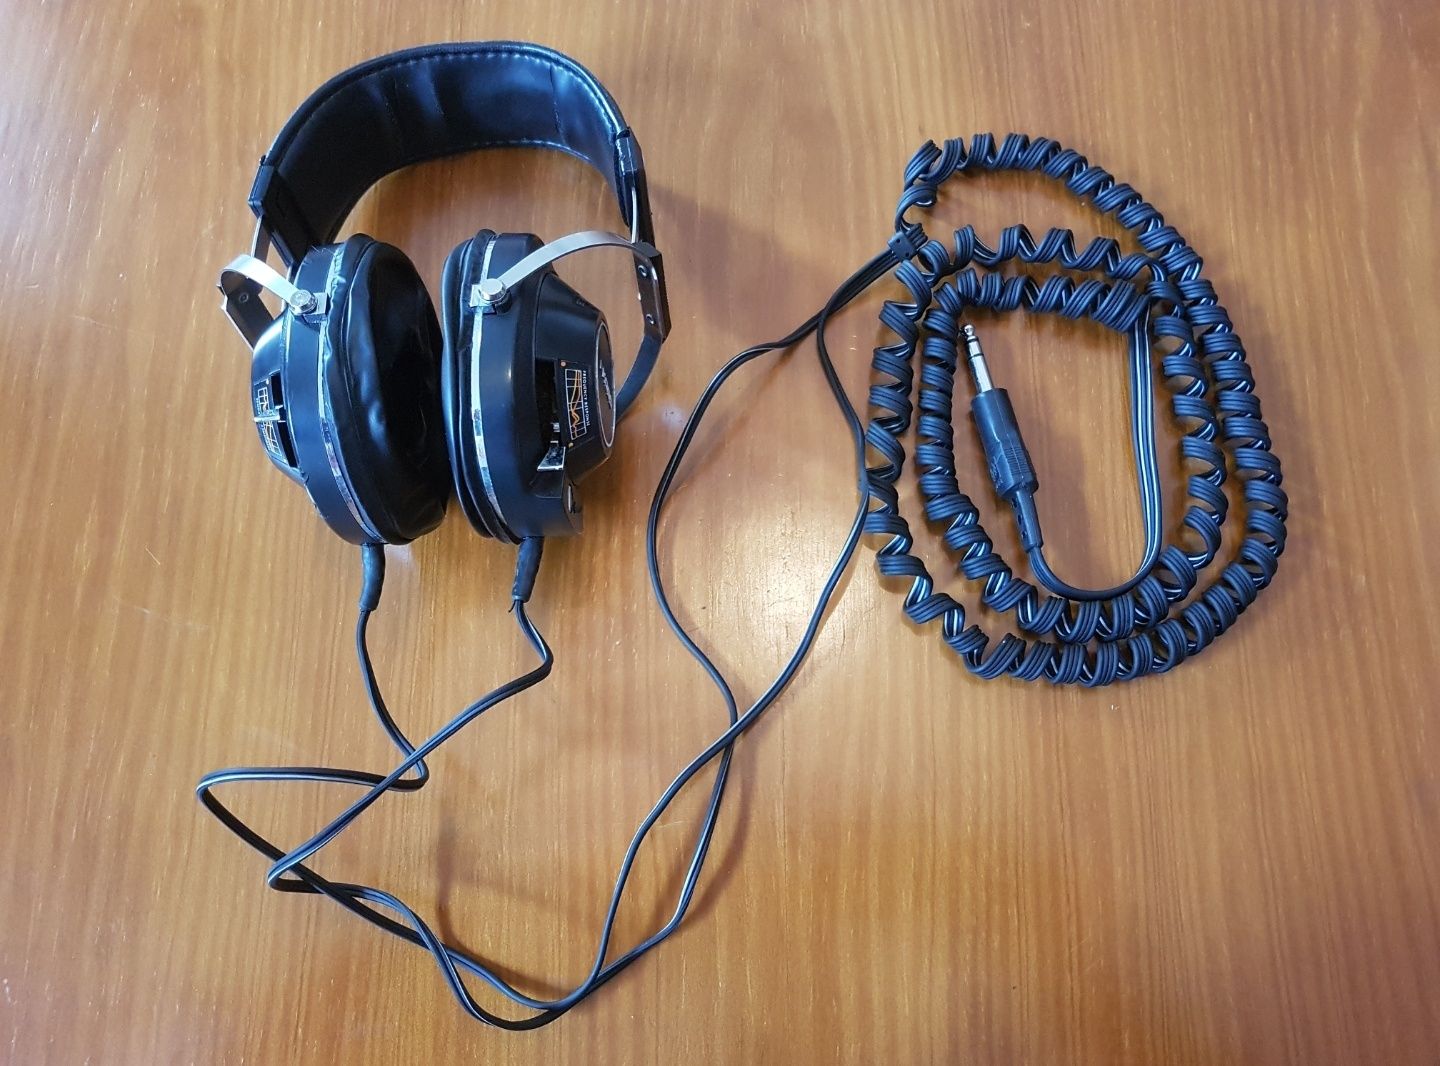 Headphones Koss TECHNICIAN / VFR (RAR0)